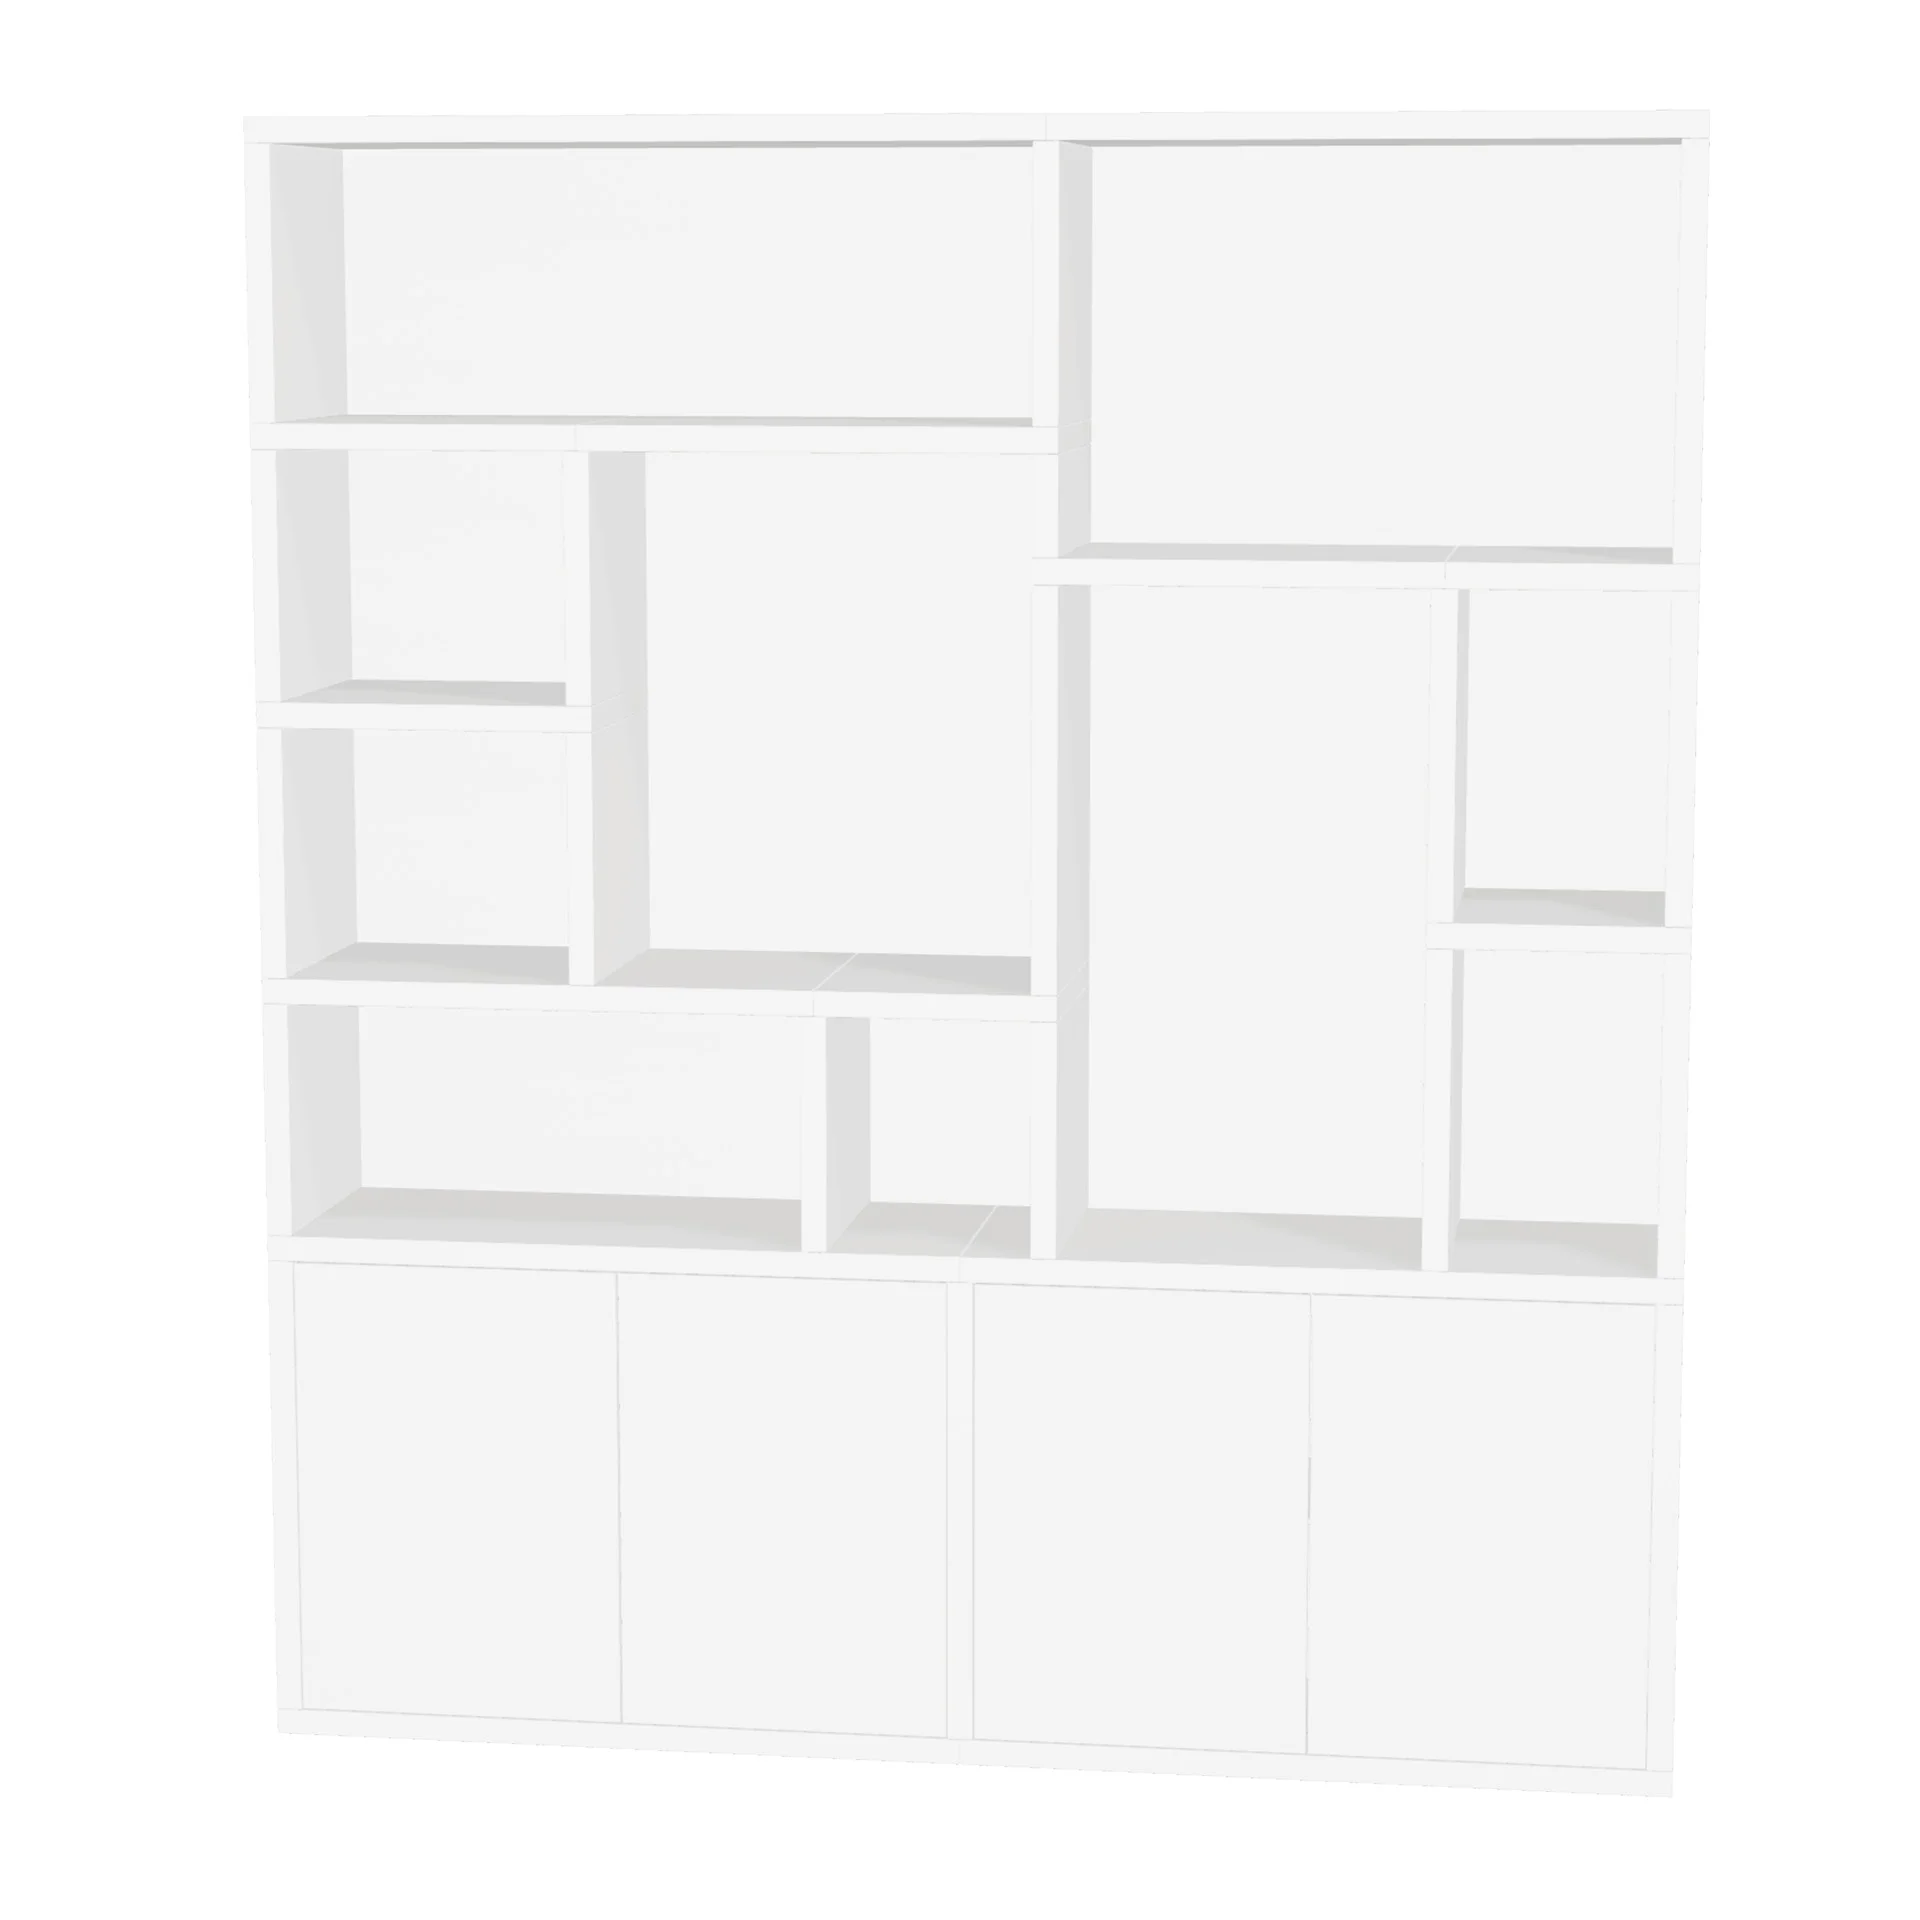 TSFC003 in white furniture board 